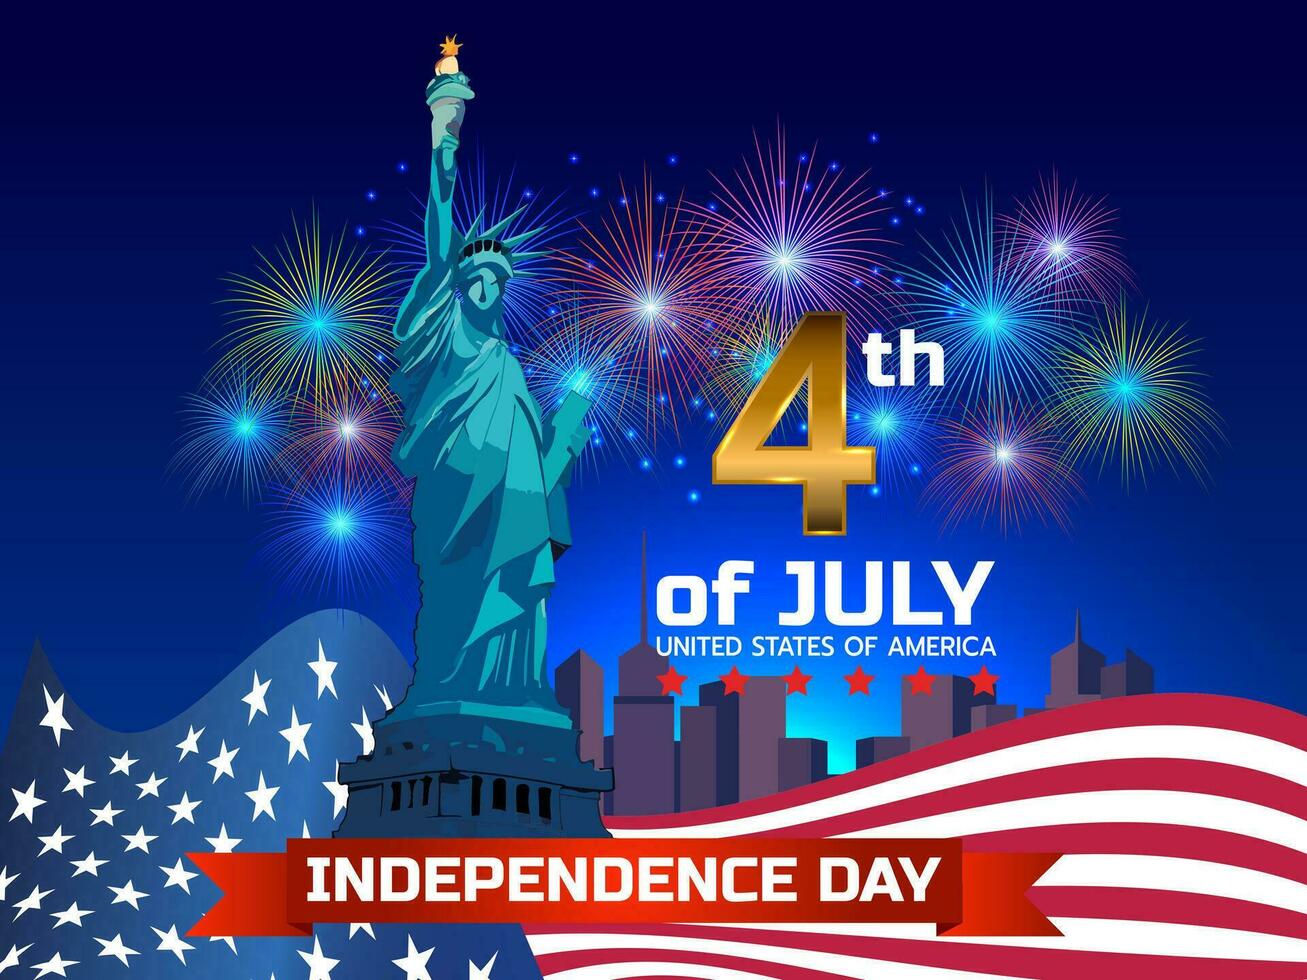 glücklich Unabhängigkeit Tag. 4 th Juli. es ist das Tag feiern Unabhängigkeit Tag, glücklich Urlaub vektor